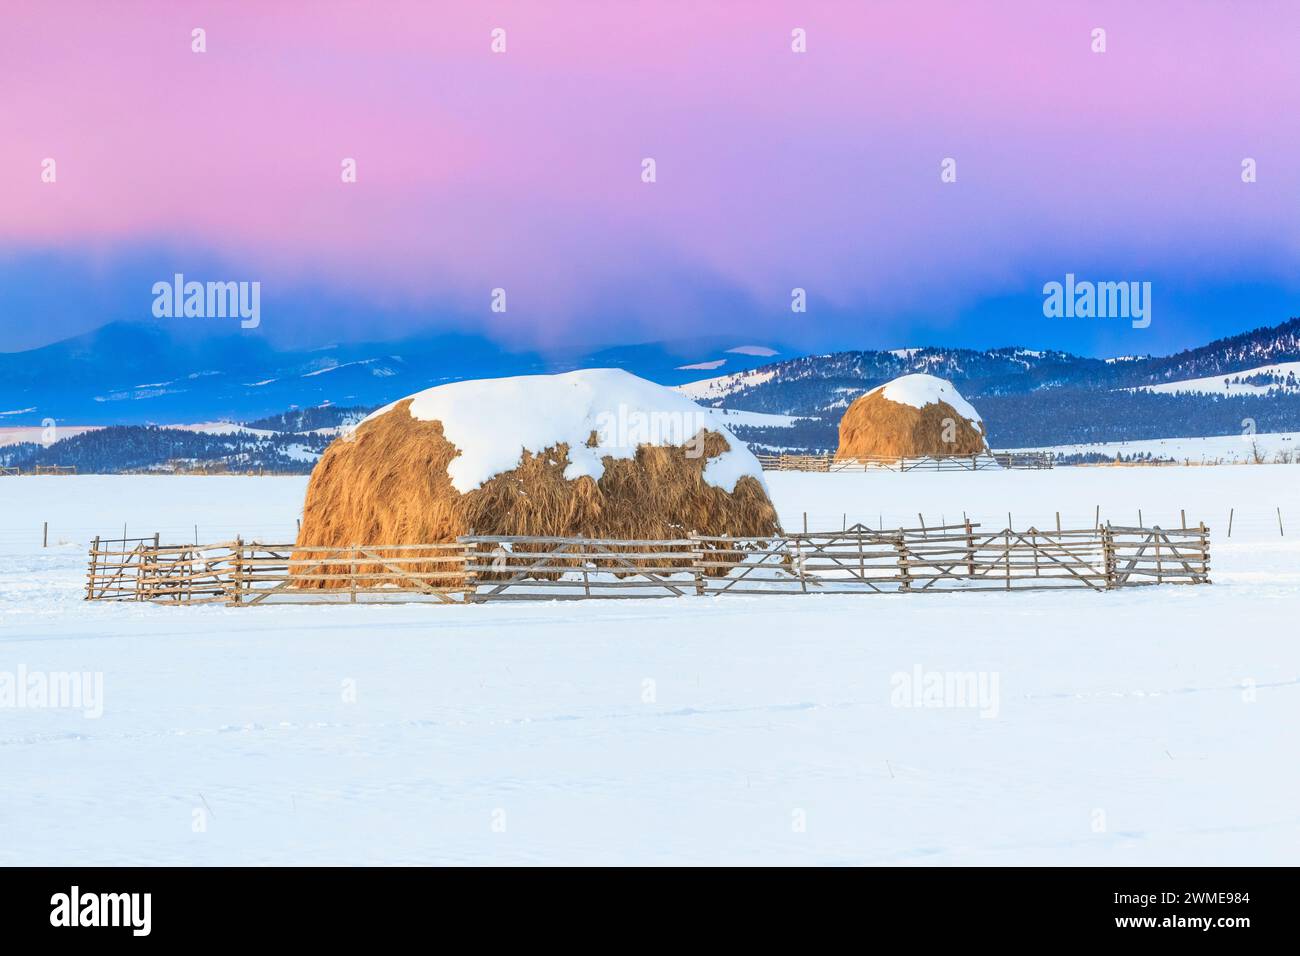 lever du soleil sur des bottes de foin en hiver près d'avon, montana Banque D'Images